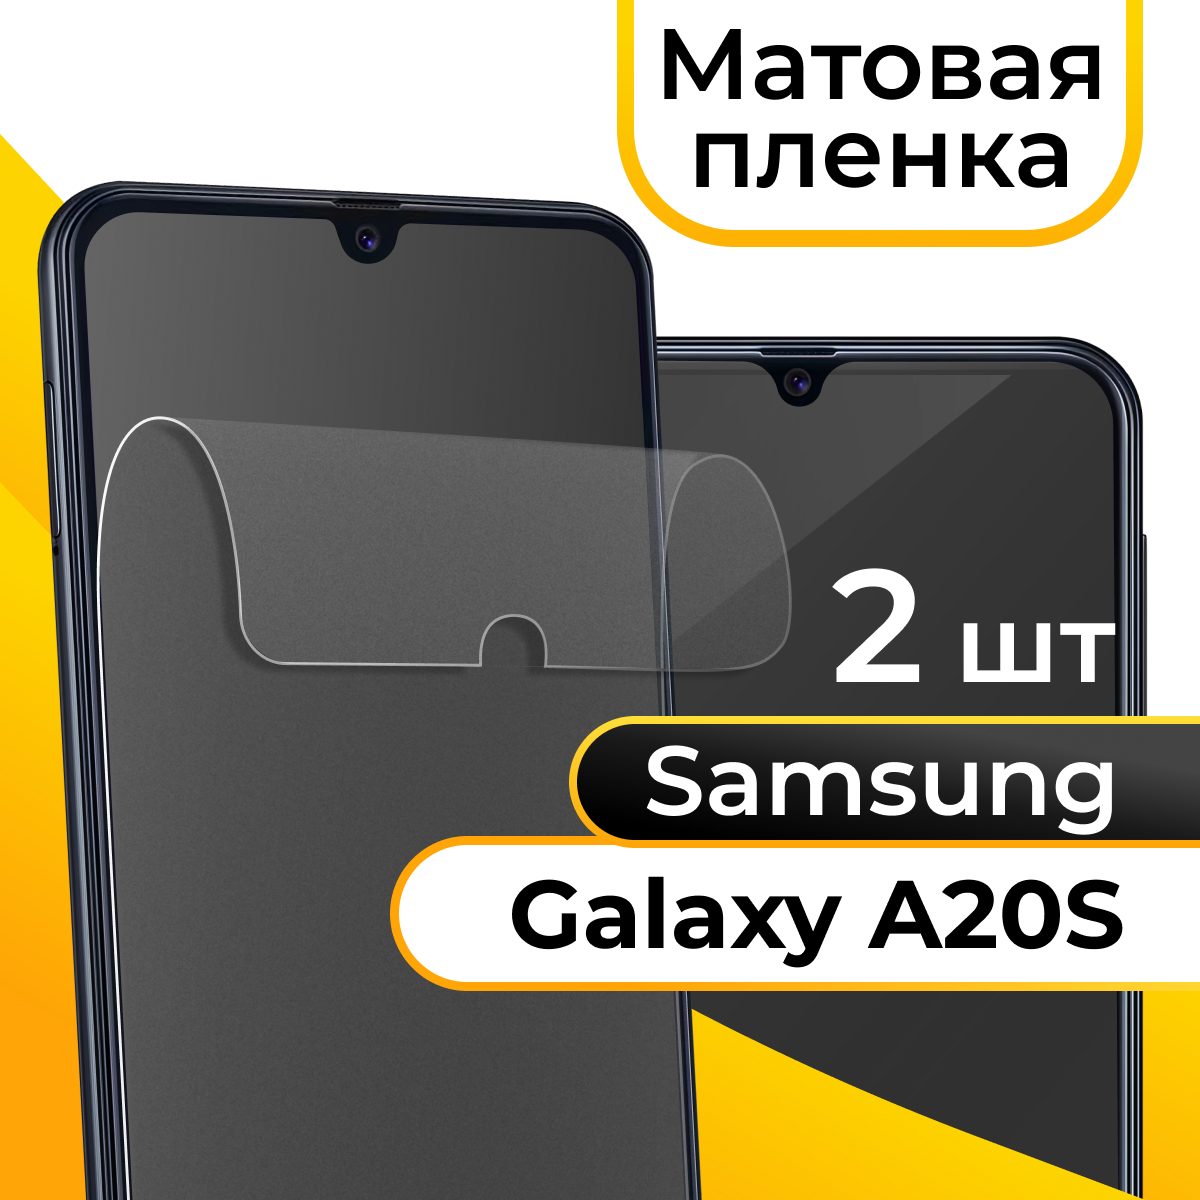 Комплект 2 шт. Матовая пленка для смартфона Samsung Galaxy A20S / Защитная противоударная пленка на телефон Самсунг Галакси А20С / Гидрогелевая пленка